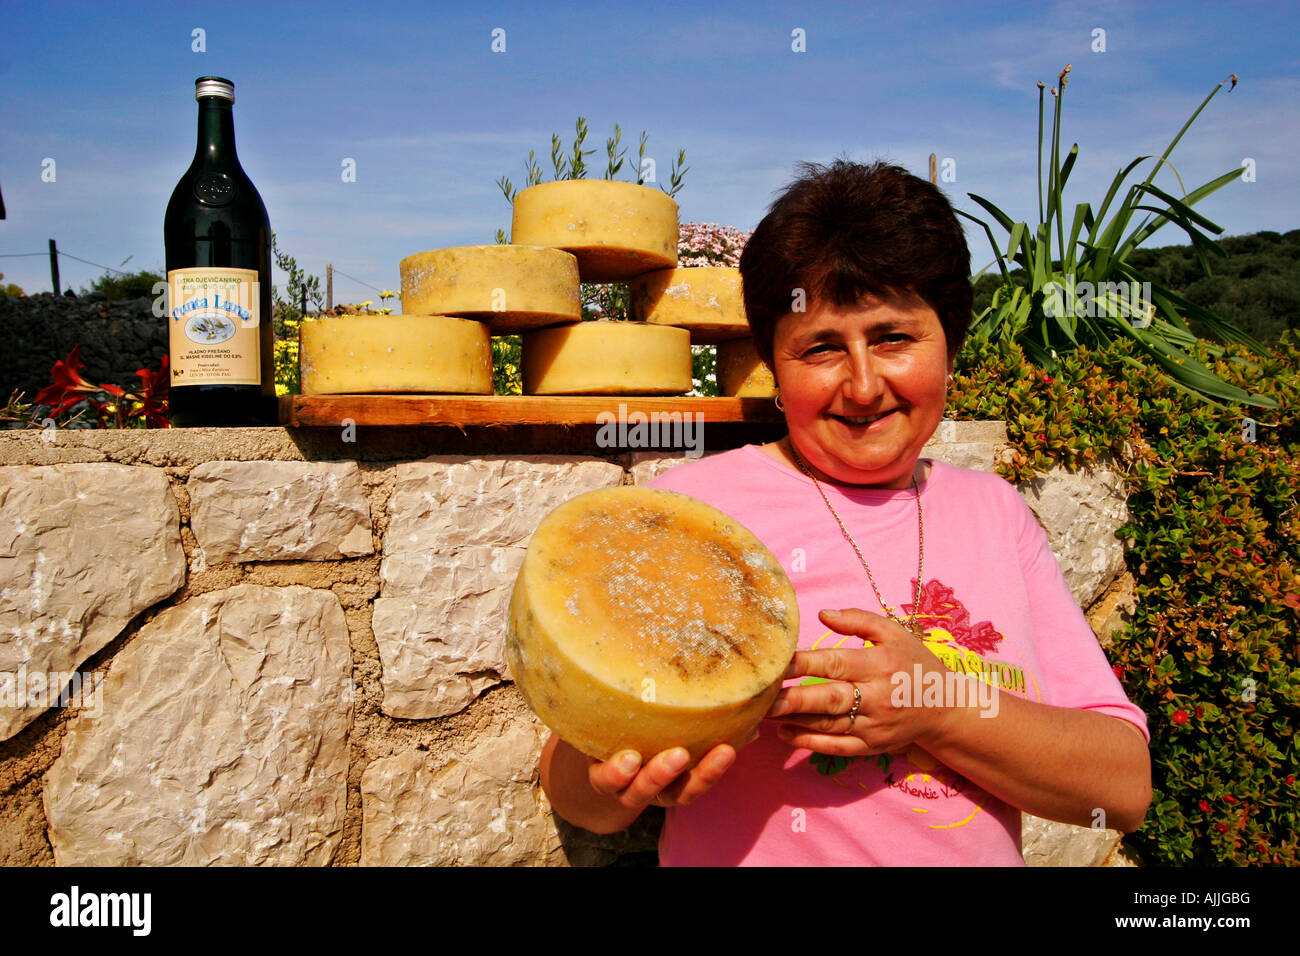 Kaese cercapersone in Tovarnele auf der Insel Pag | formaggio di Pago in Tovarnele sull'Isola di Pag Foto Stock